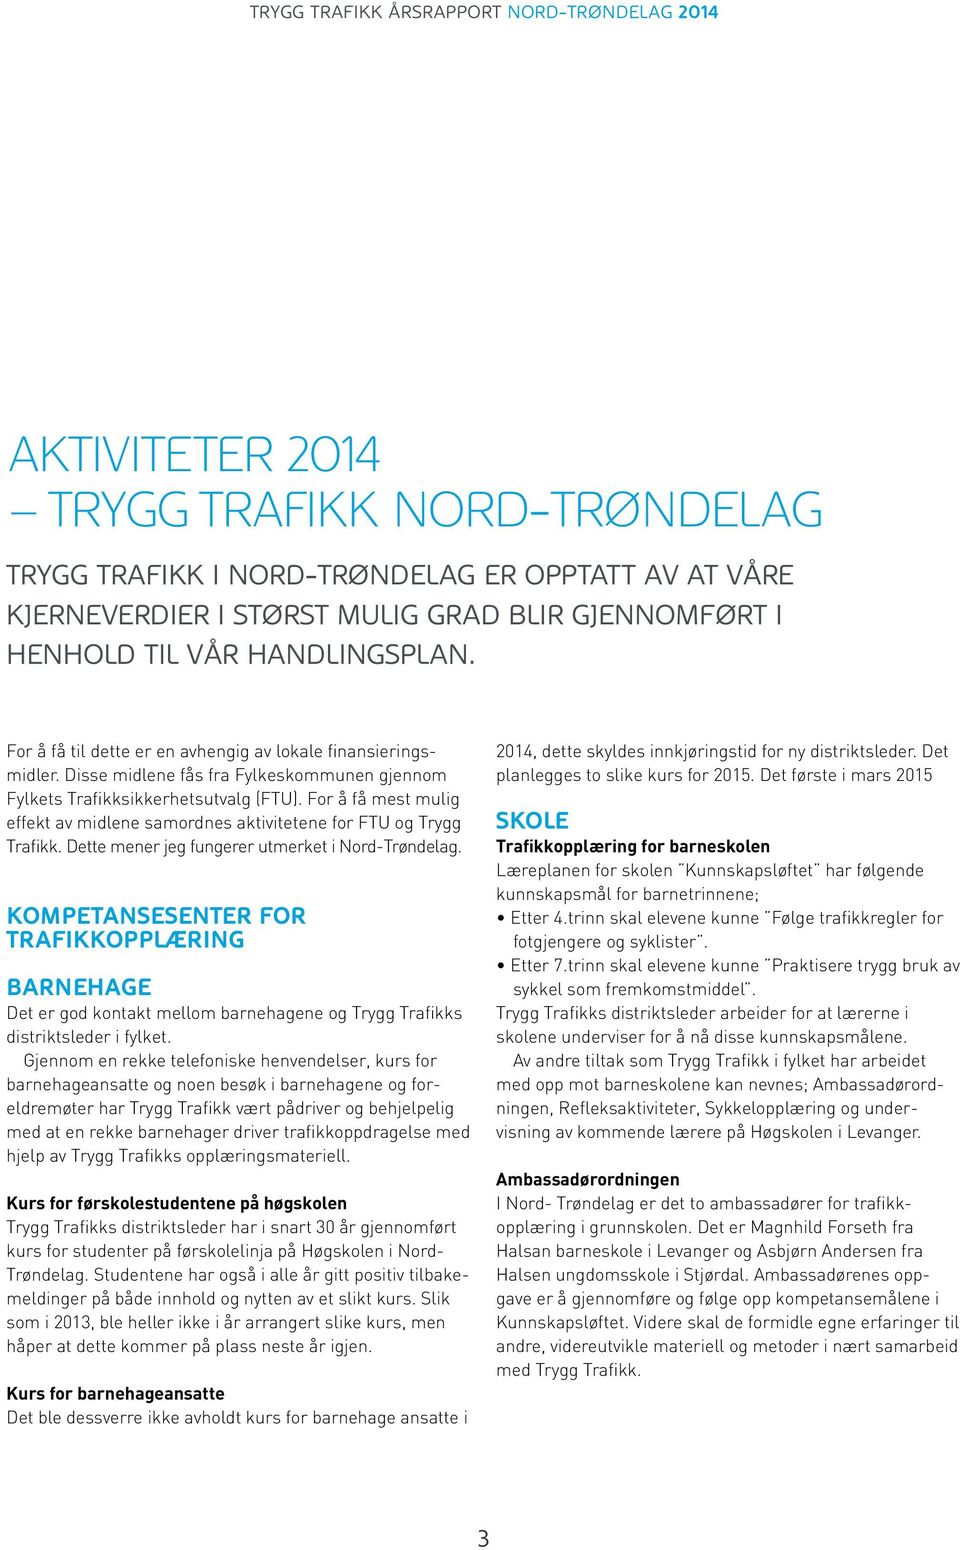 For å få mest mulig effekt av midlene samordnes aktivitetene for FTU og Trygg Trafikk. Dette mener jeg fungerer utmerket i Nord-Trøndelag.